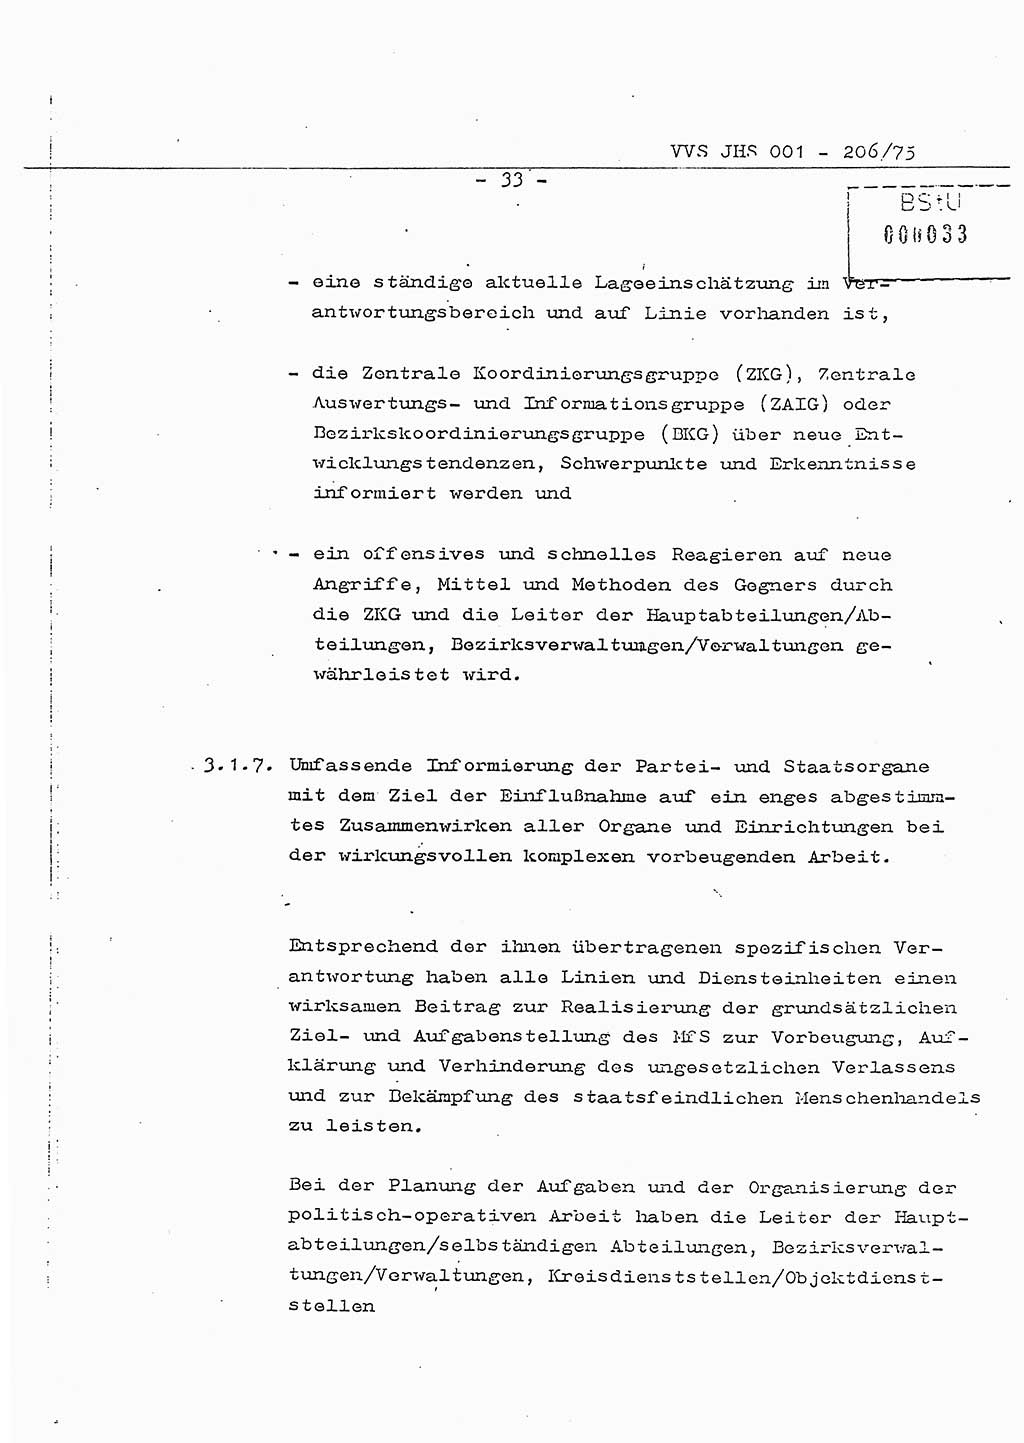 Dissertation Generalmajor Manfred Hummitzsch (Leiter der BV Leipzig), Generalmajor Heinz Fiedler (HA Ⅵ), Oberst Rolf Fister (HA Ⅸ), Ministerium für Staatssicherheit (MfS) [Deutsche Demokratische Republik (DDR)], Juristische Hochschule (JHS), Vertrauliche Verschlußsache (VVS) 001-206/75, Potsdam 1975, Seite 33 (Diss. MfS DDR JHS VVS 001-206/75 1975, S. 33)